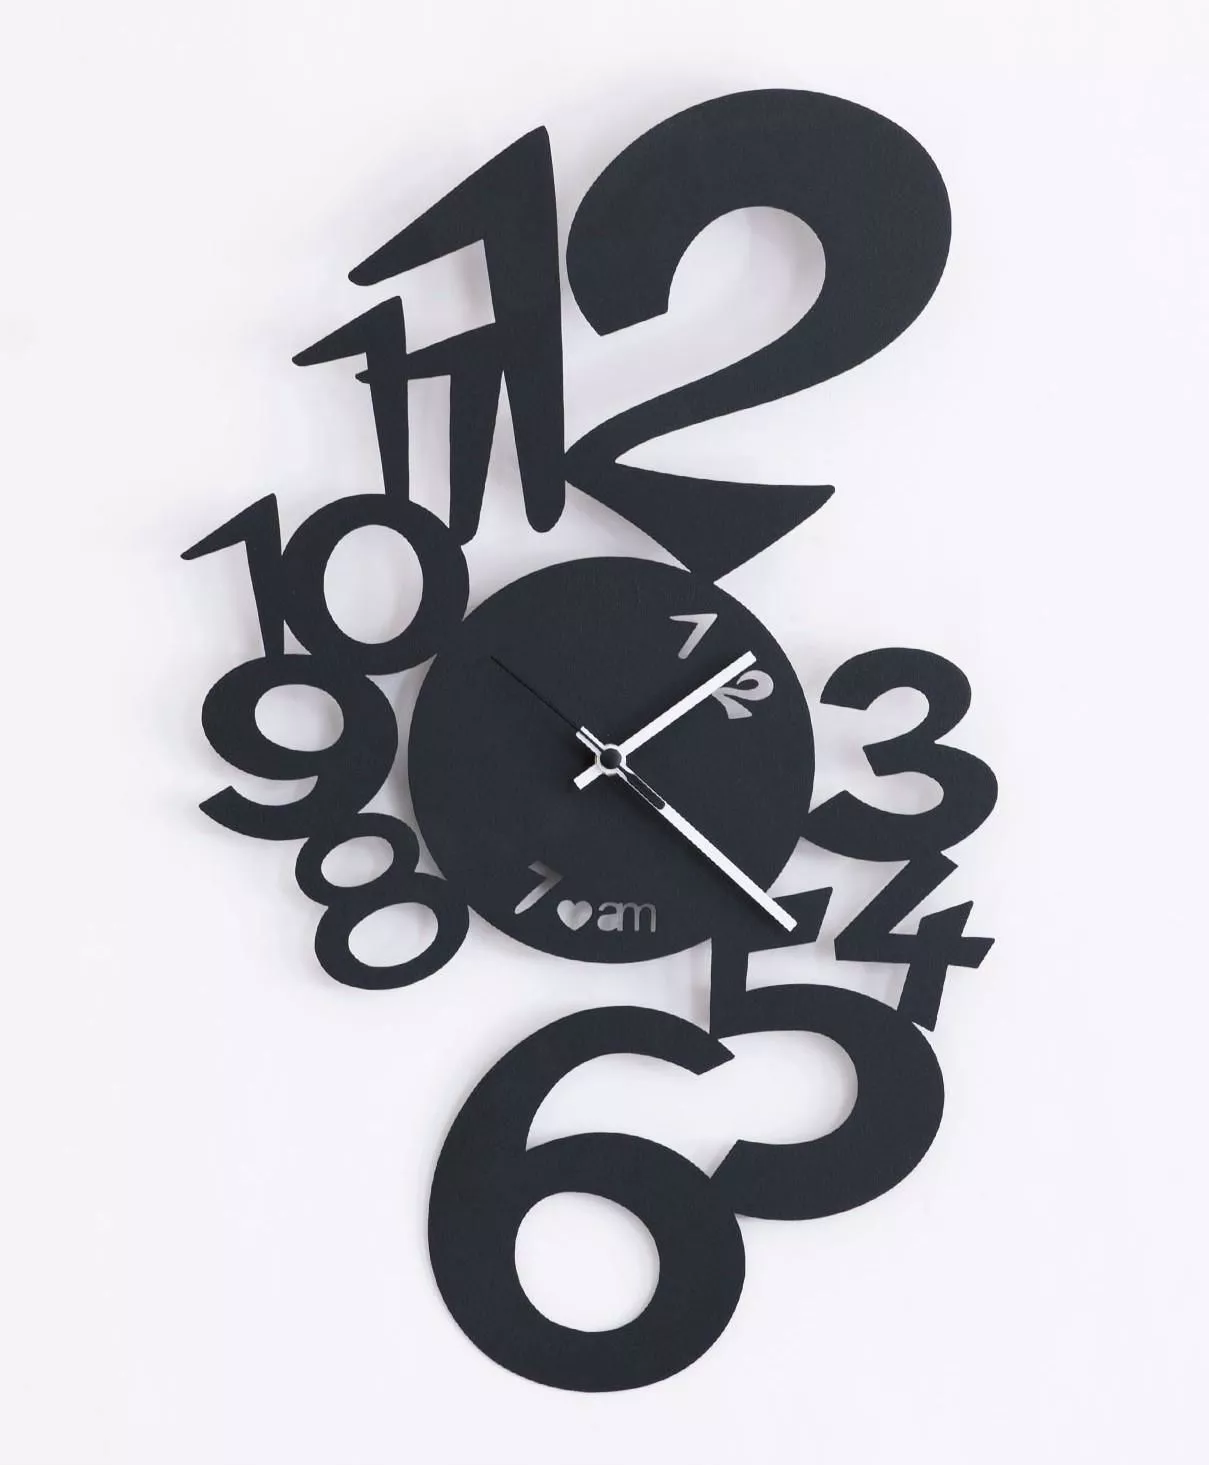 Orologio da Parete Silenzioso Nero in Metallo Design Contemporaneo 60x